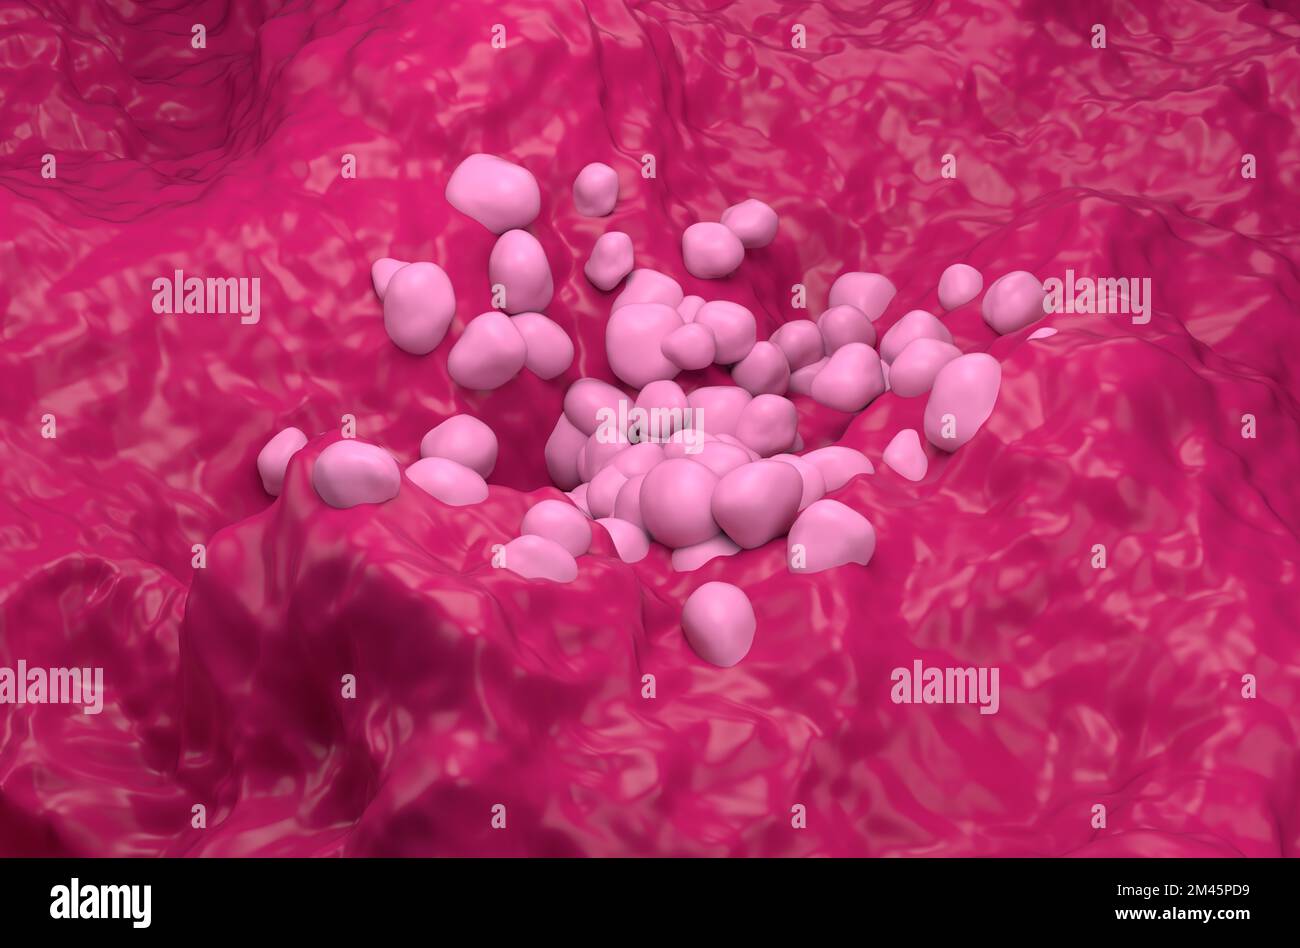 Nicht-kleinzelliges Lungenkarzinom (NSCLC) im Lungengewebe - isometrische 3D-Darstellung Stockfoto